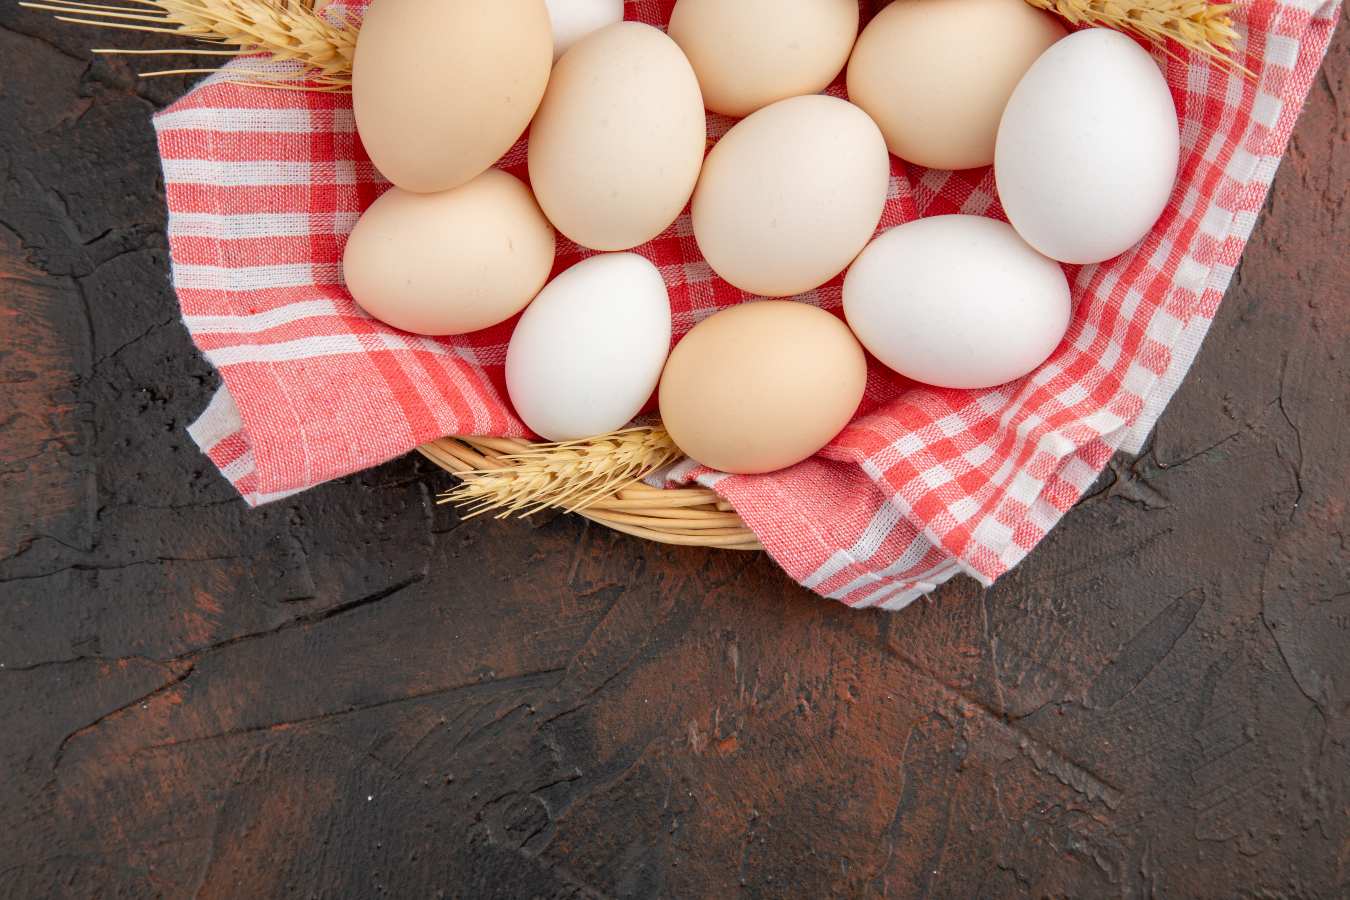 Jak przekroić jajko w skorupce? Oto sposób na krojenie jajek w skorupach